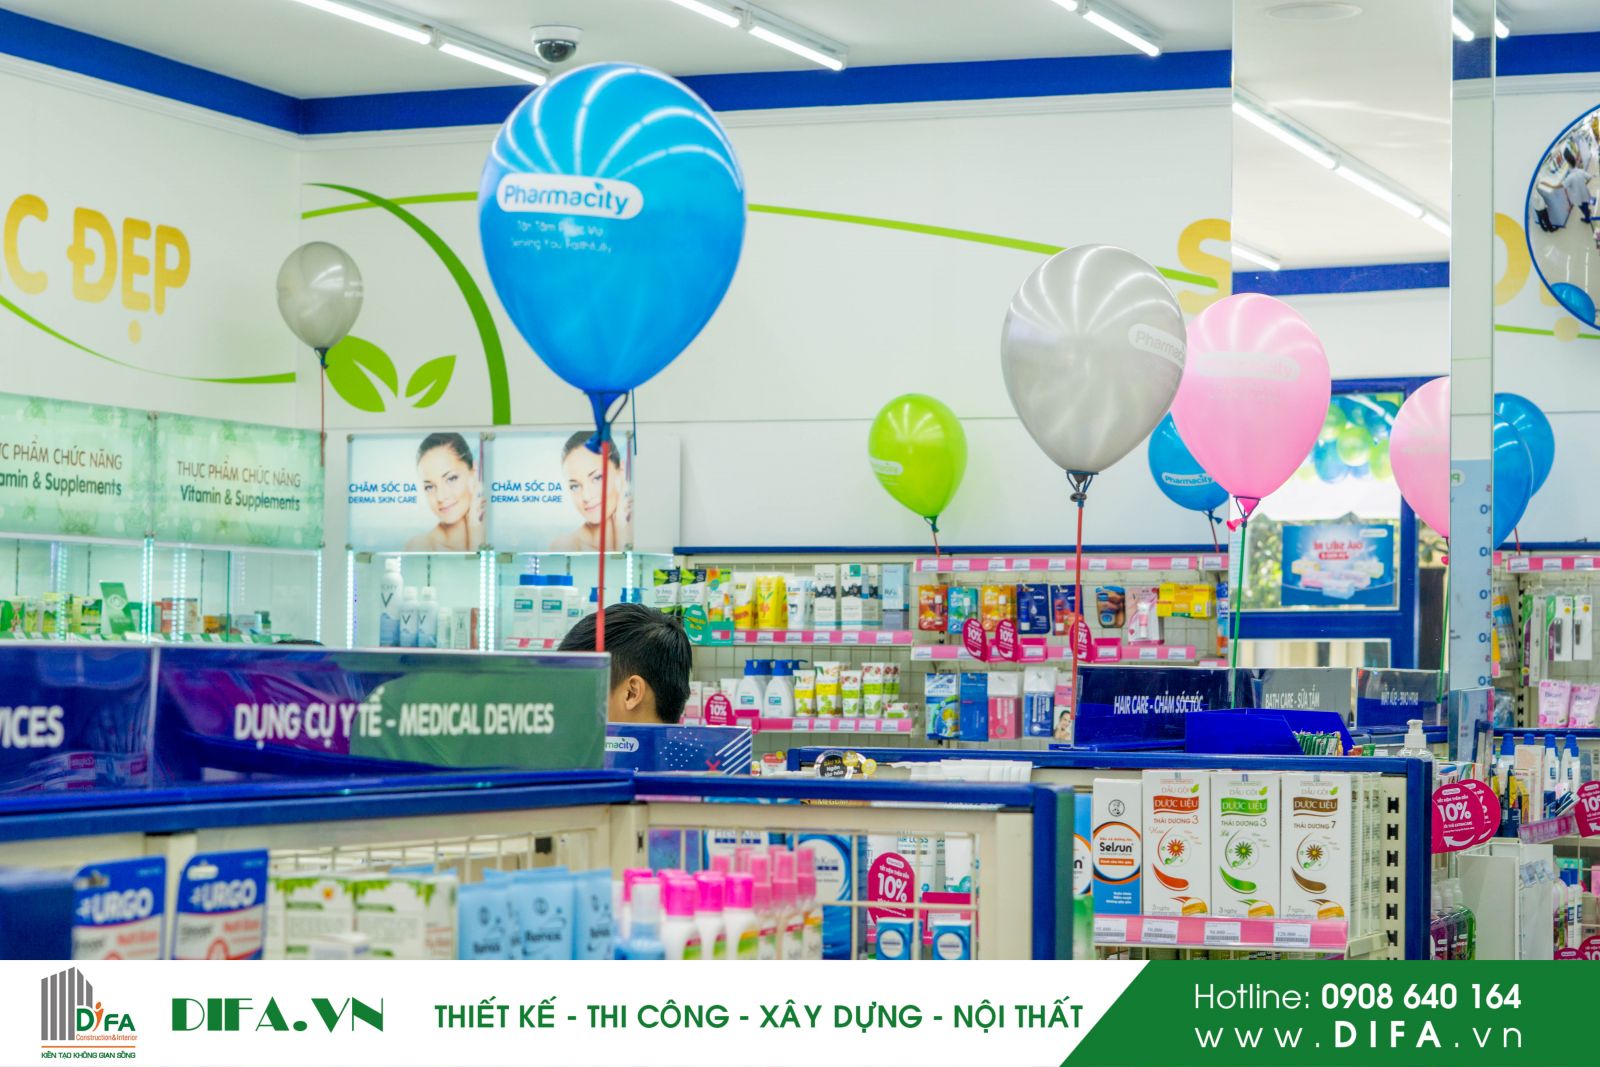 Thi công chuỗi cửa hàng đẹp - Hoàn thành nhà thuốc Pharmacity số 259 | Diệp Gia